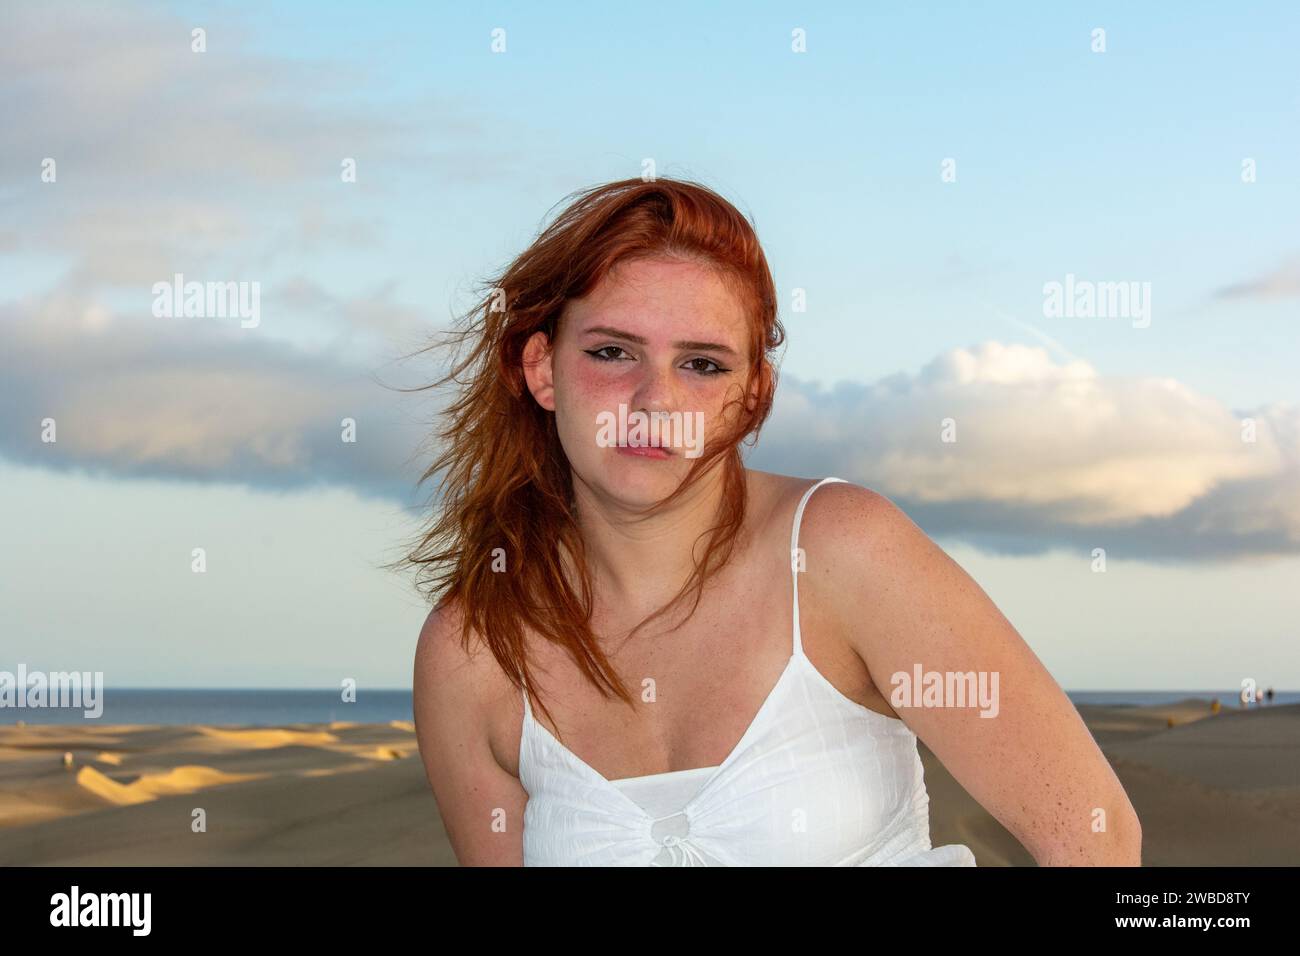 Giovane ragazza con i capelli rossi, in spiaggia d'estate, i suoi capelli sono stregati dal vento Foto Stock